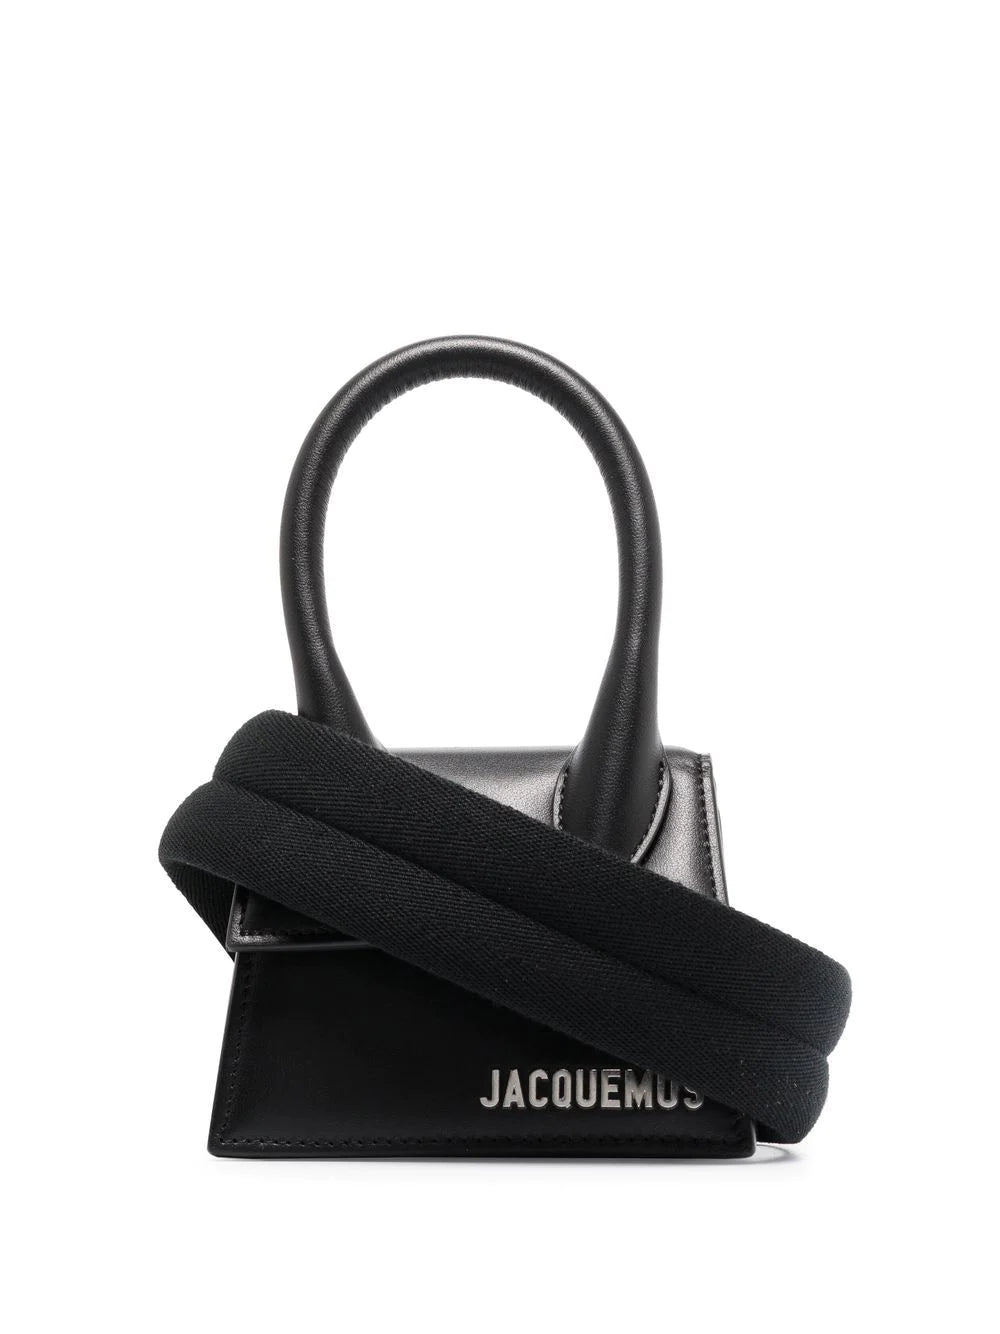 Jacquemus Black Leather Mini Le Chiquito Bag Jacquemus